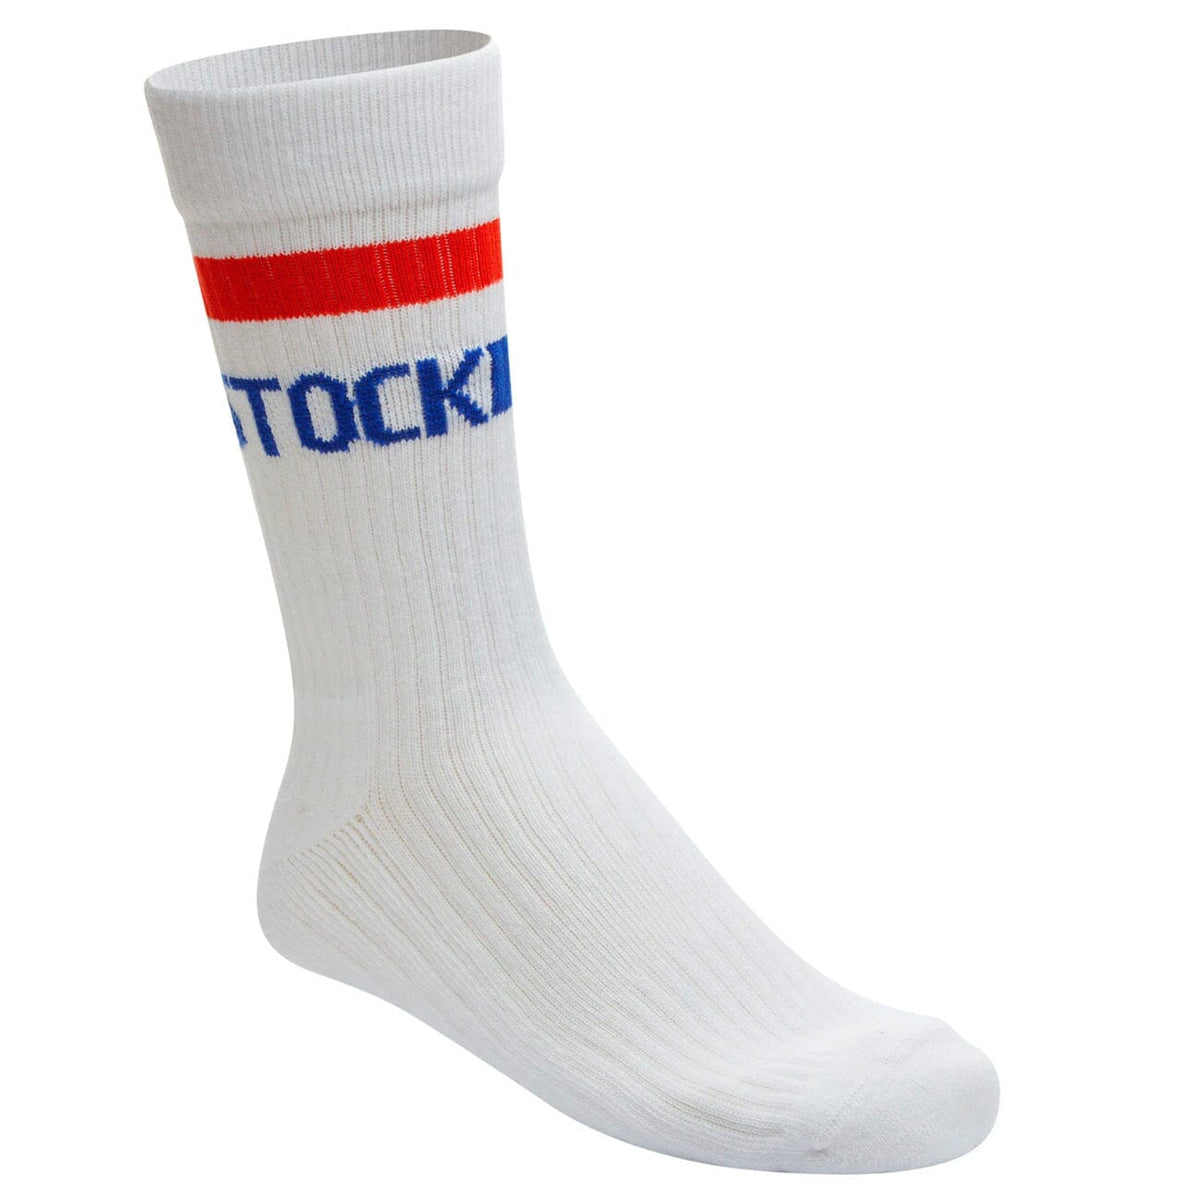 Birkenstock Cotton Tennis Sock White Socks Birkenstock Socks White 36-38 